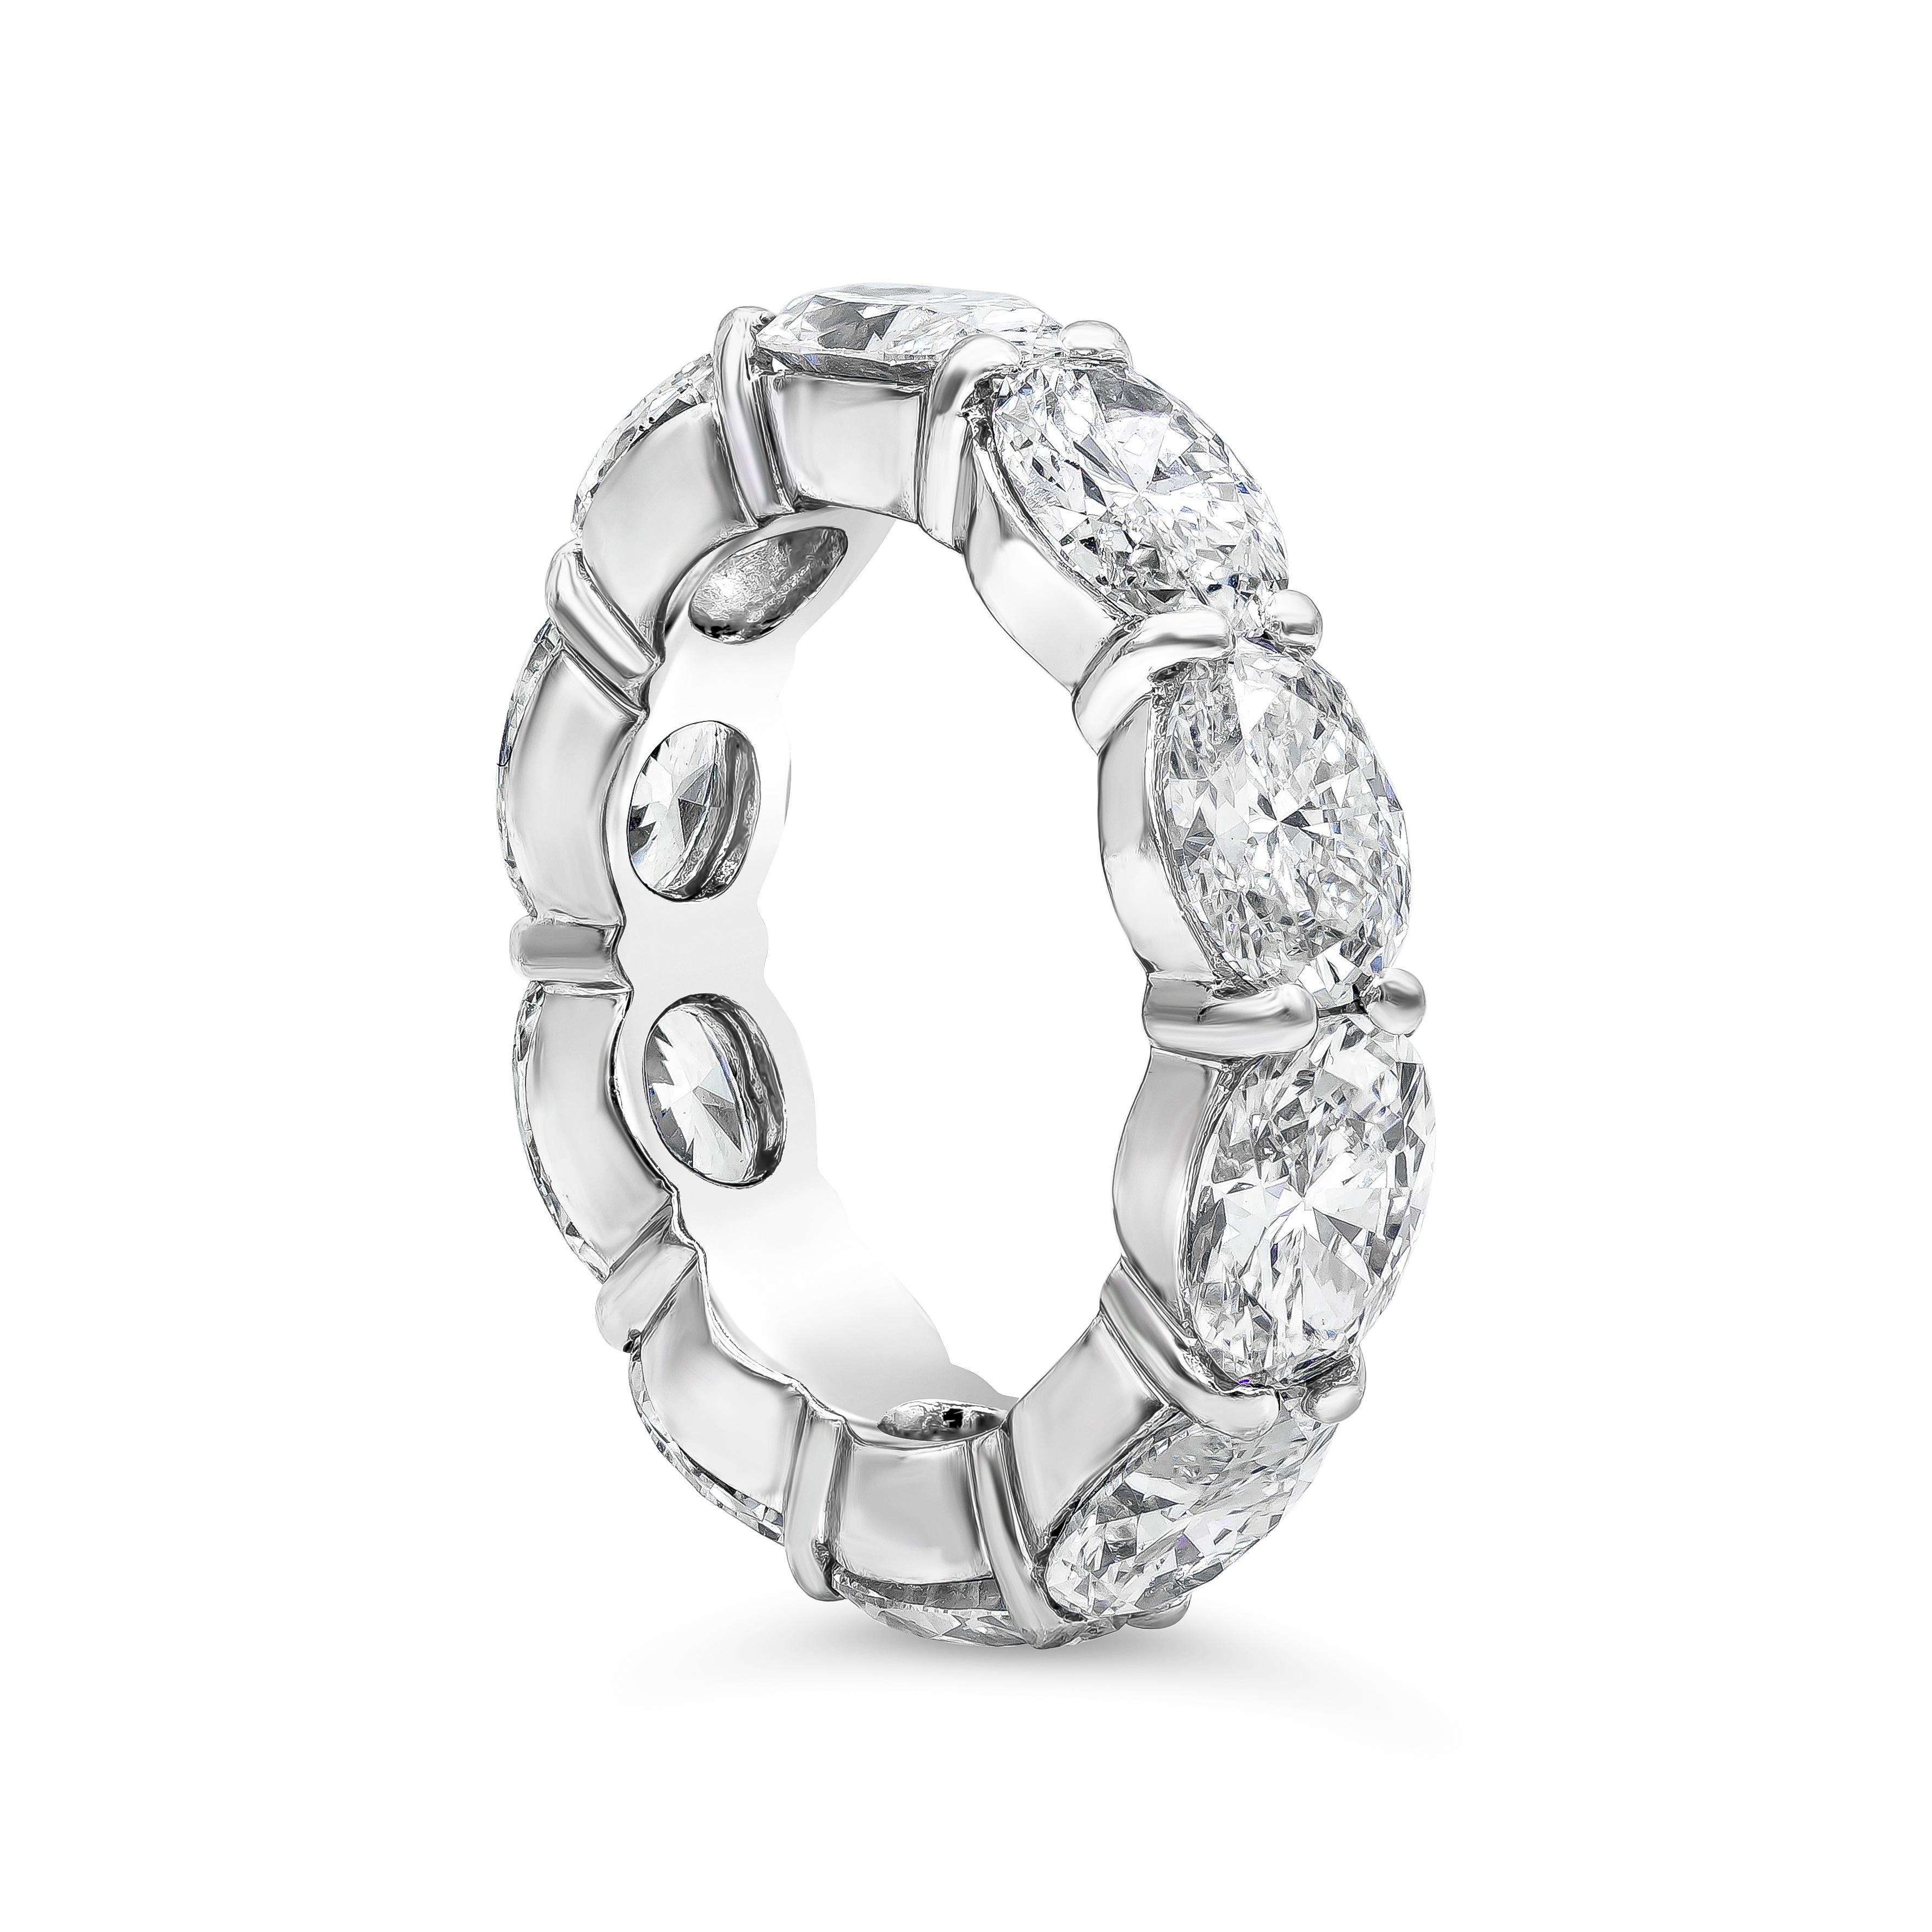 Ein sehr modischer Ehering mit einer Reihe von Diamanten im Brillant-Oval-Schliff mit einem Gesamtgewicht von 7,40 Karat, gefasst in einem nicht-traditionellen Ost-West-Design (horizontal) aus Platin. Größe 6.5 US.

Roman Malakov ist ein